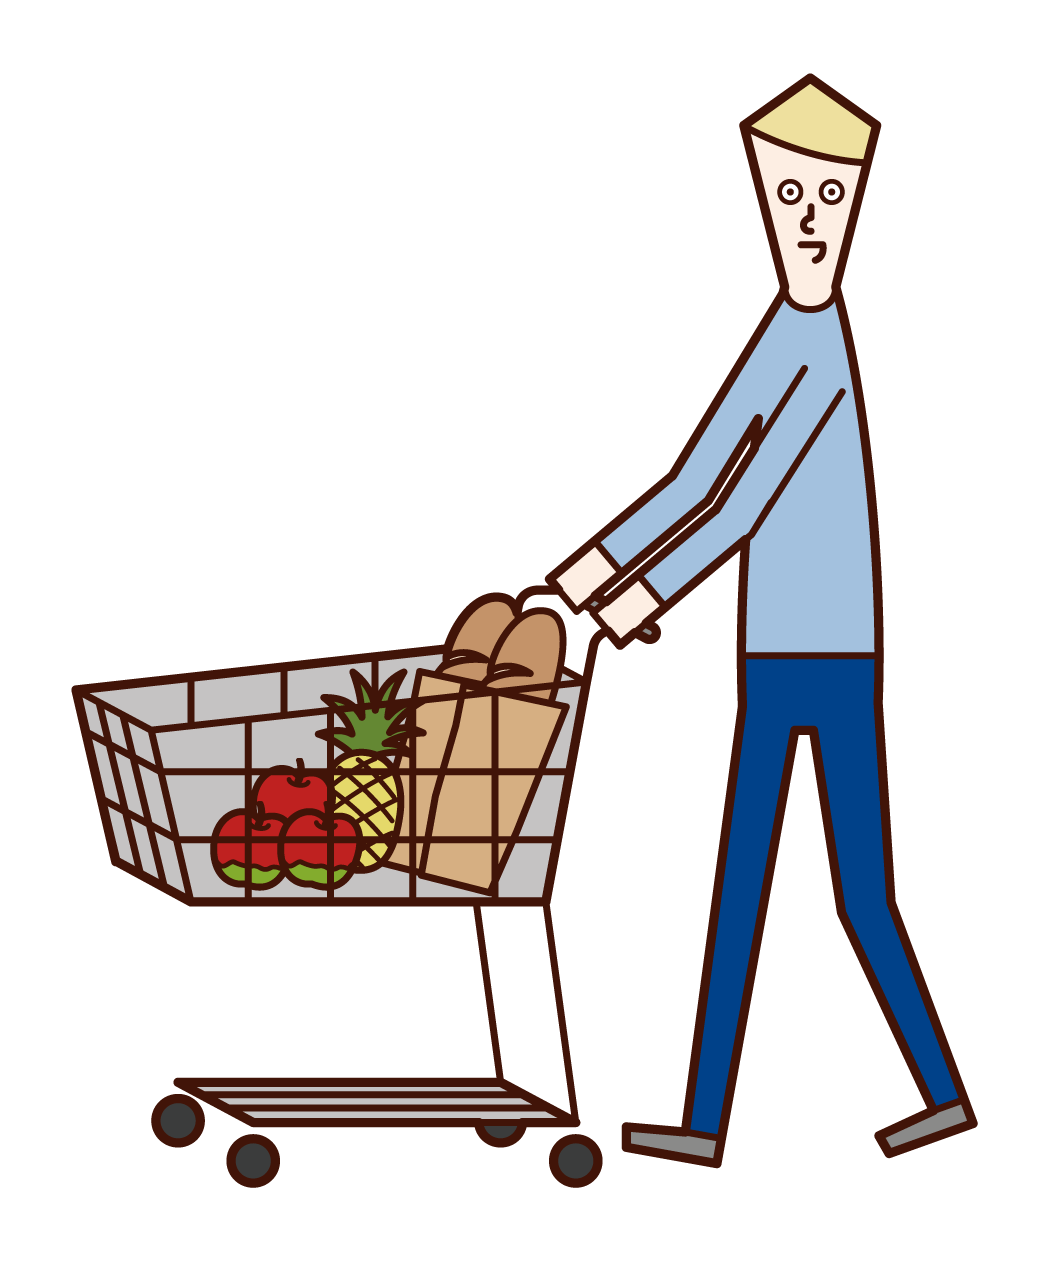 スーパーマーケットで買い物をする人 男性 のイラスト フリーイラスト素材 Kukukeke ククケケ